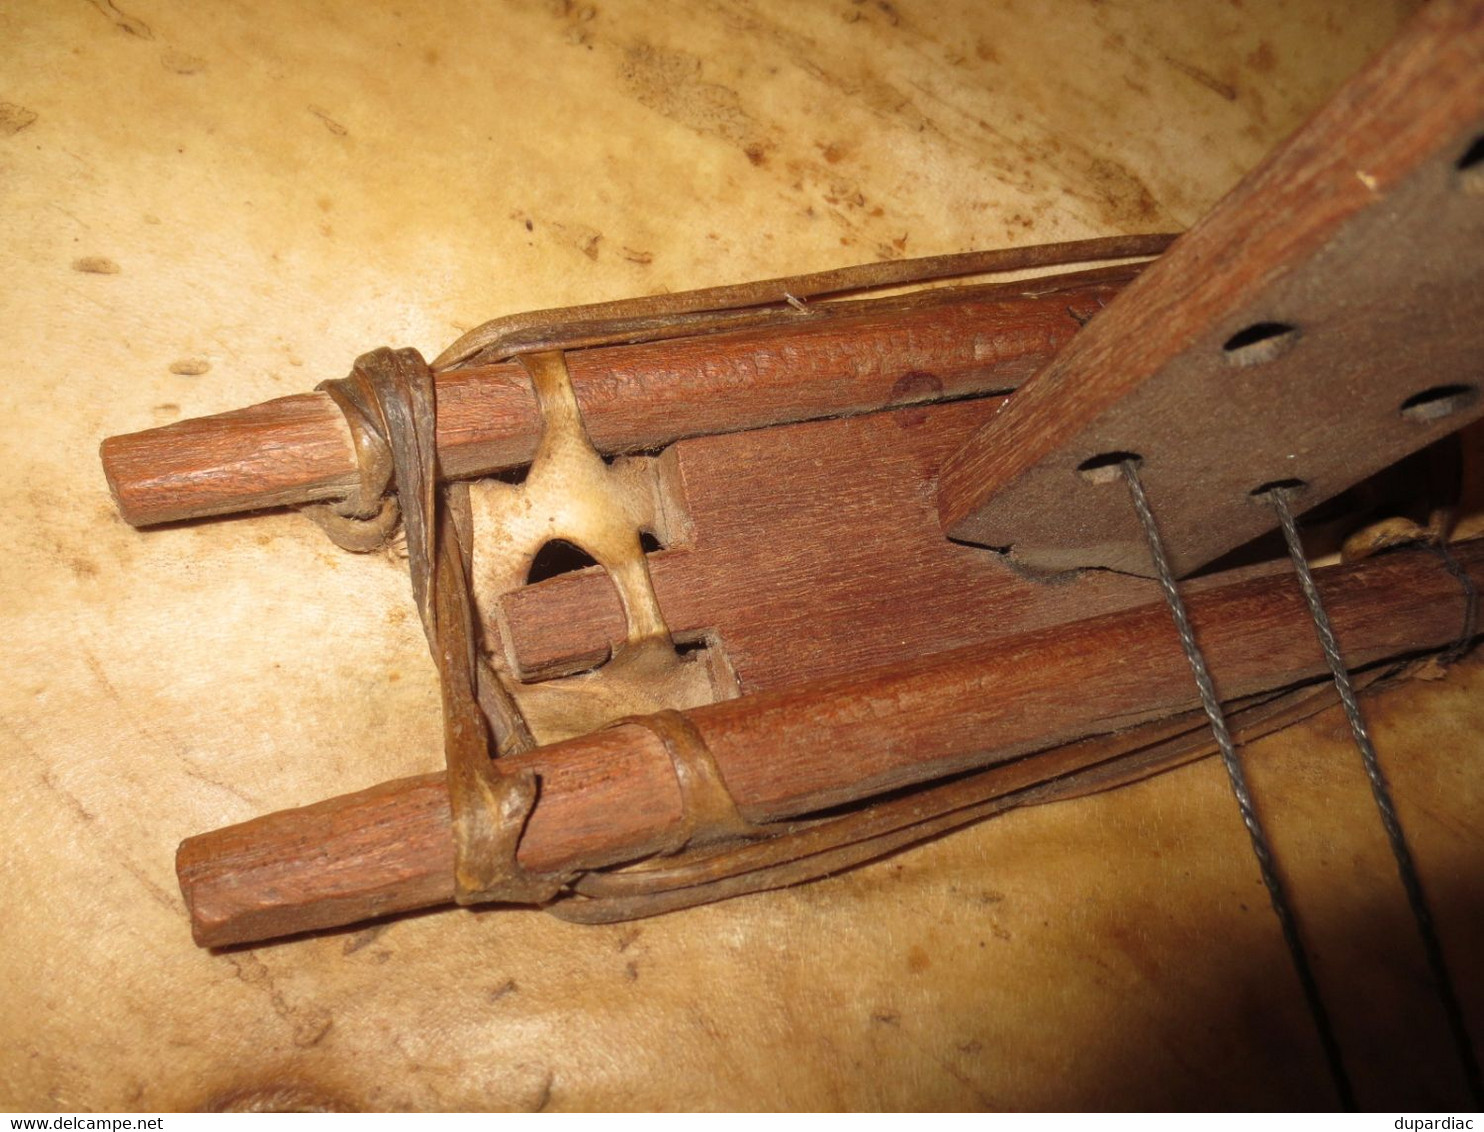 Authentique CORA du Mali, instrument de musique traditionnel de l'Afrique de l'Ouest.